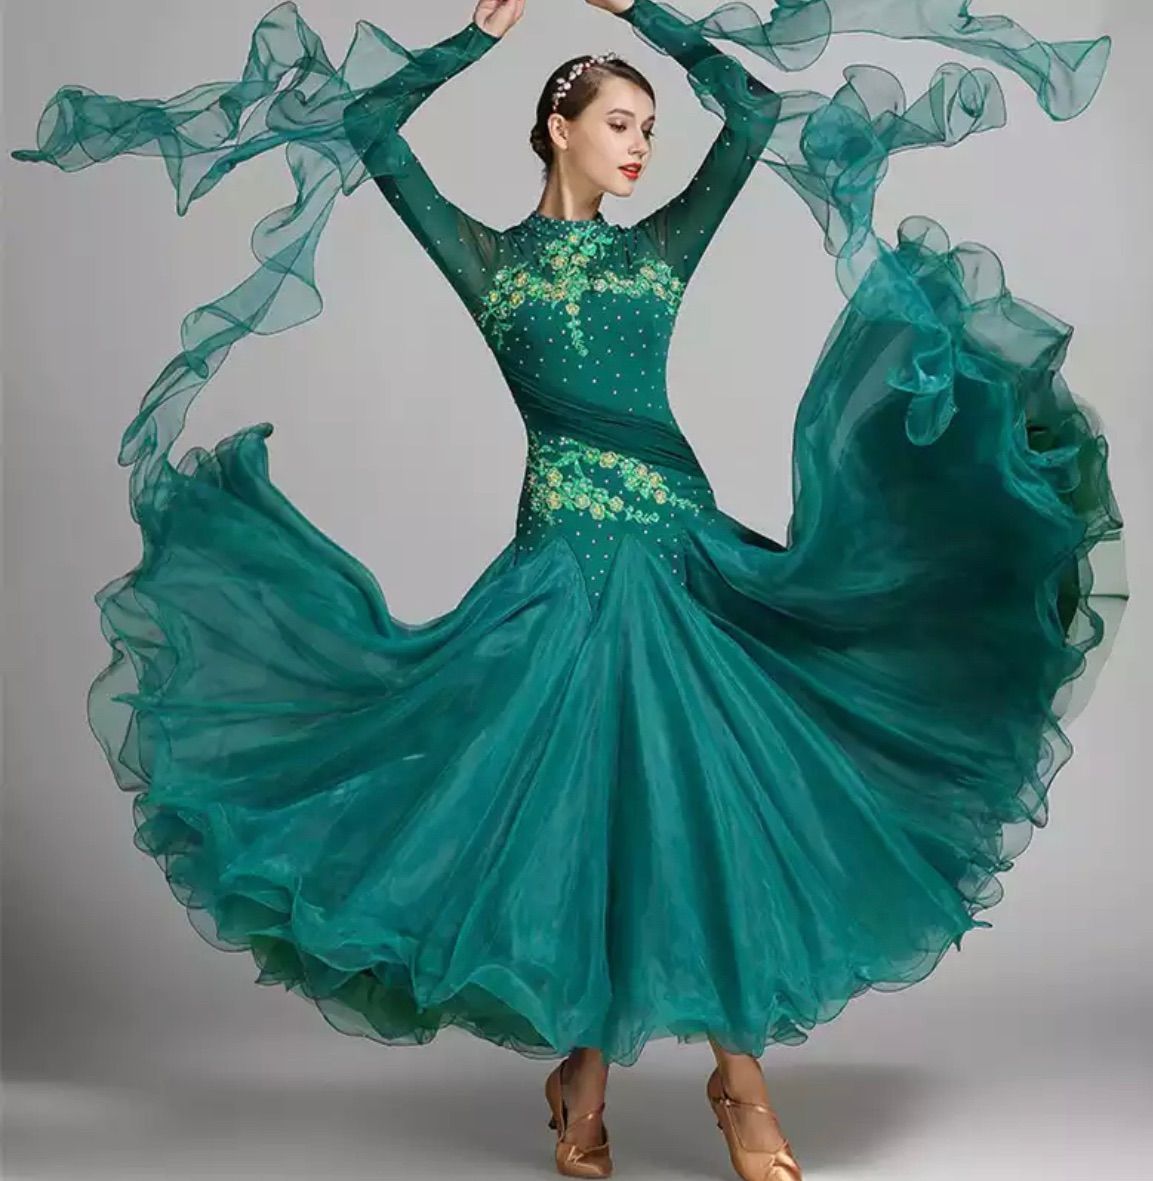 社交ダンス ドレス デモ パーティー グリーン Mサイズカラーグリーン 